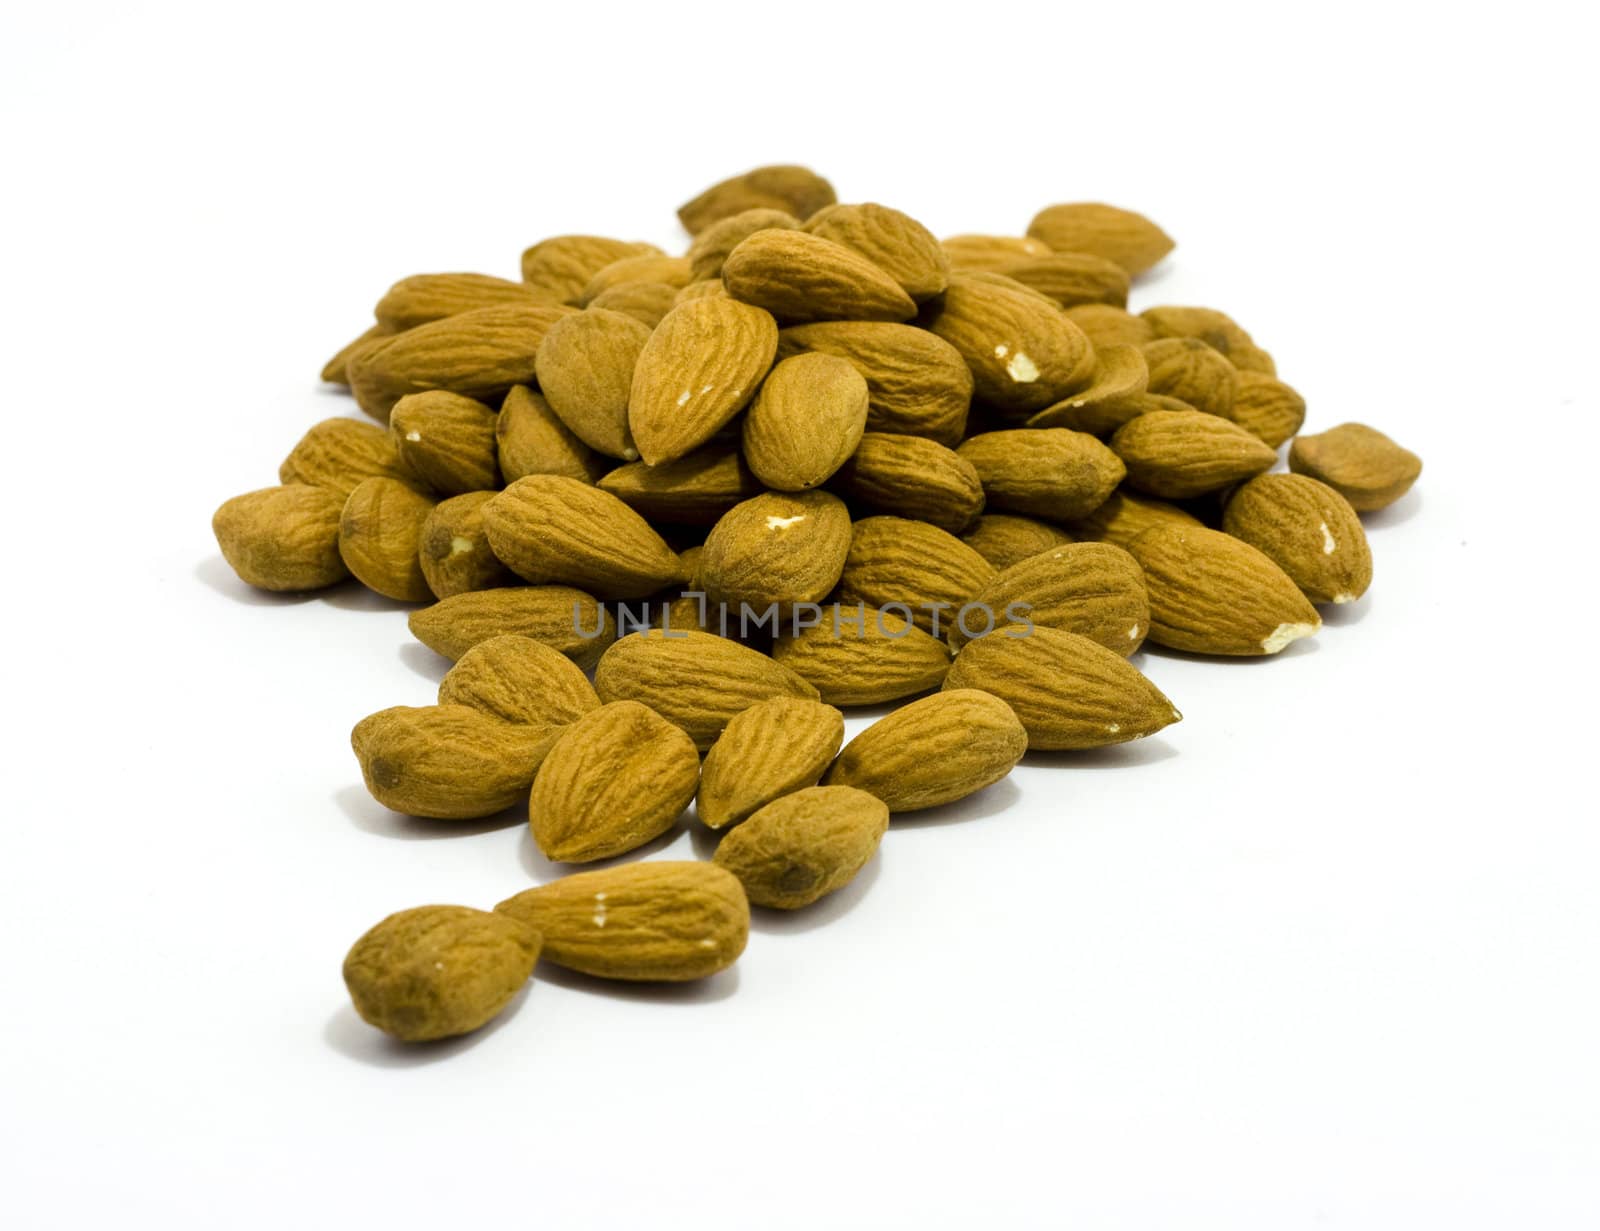 Almond nuts by ursolv